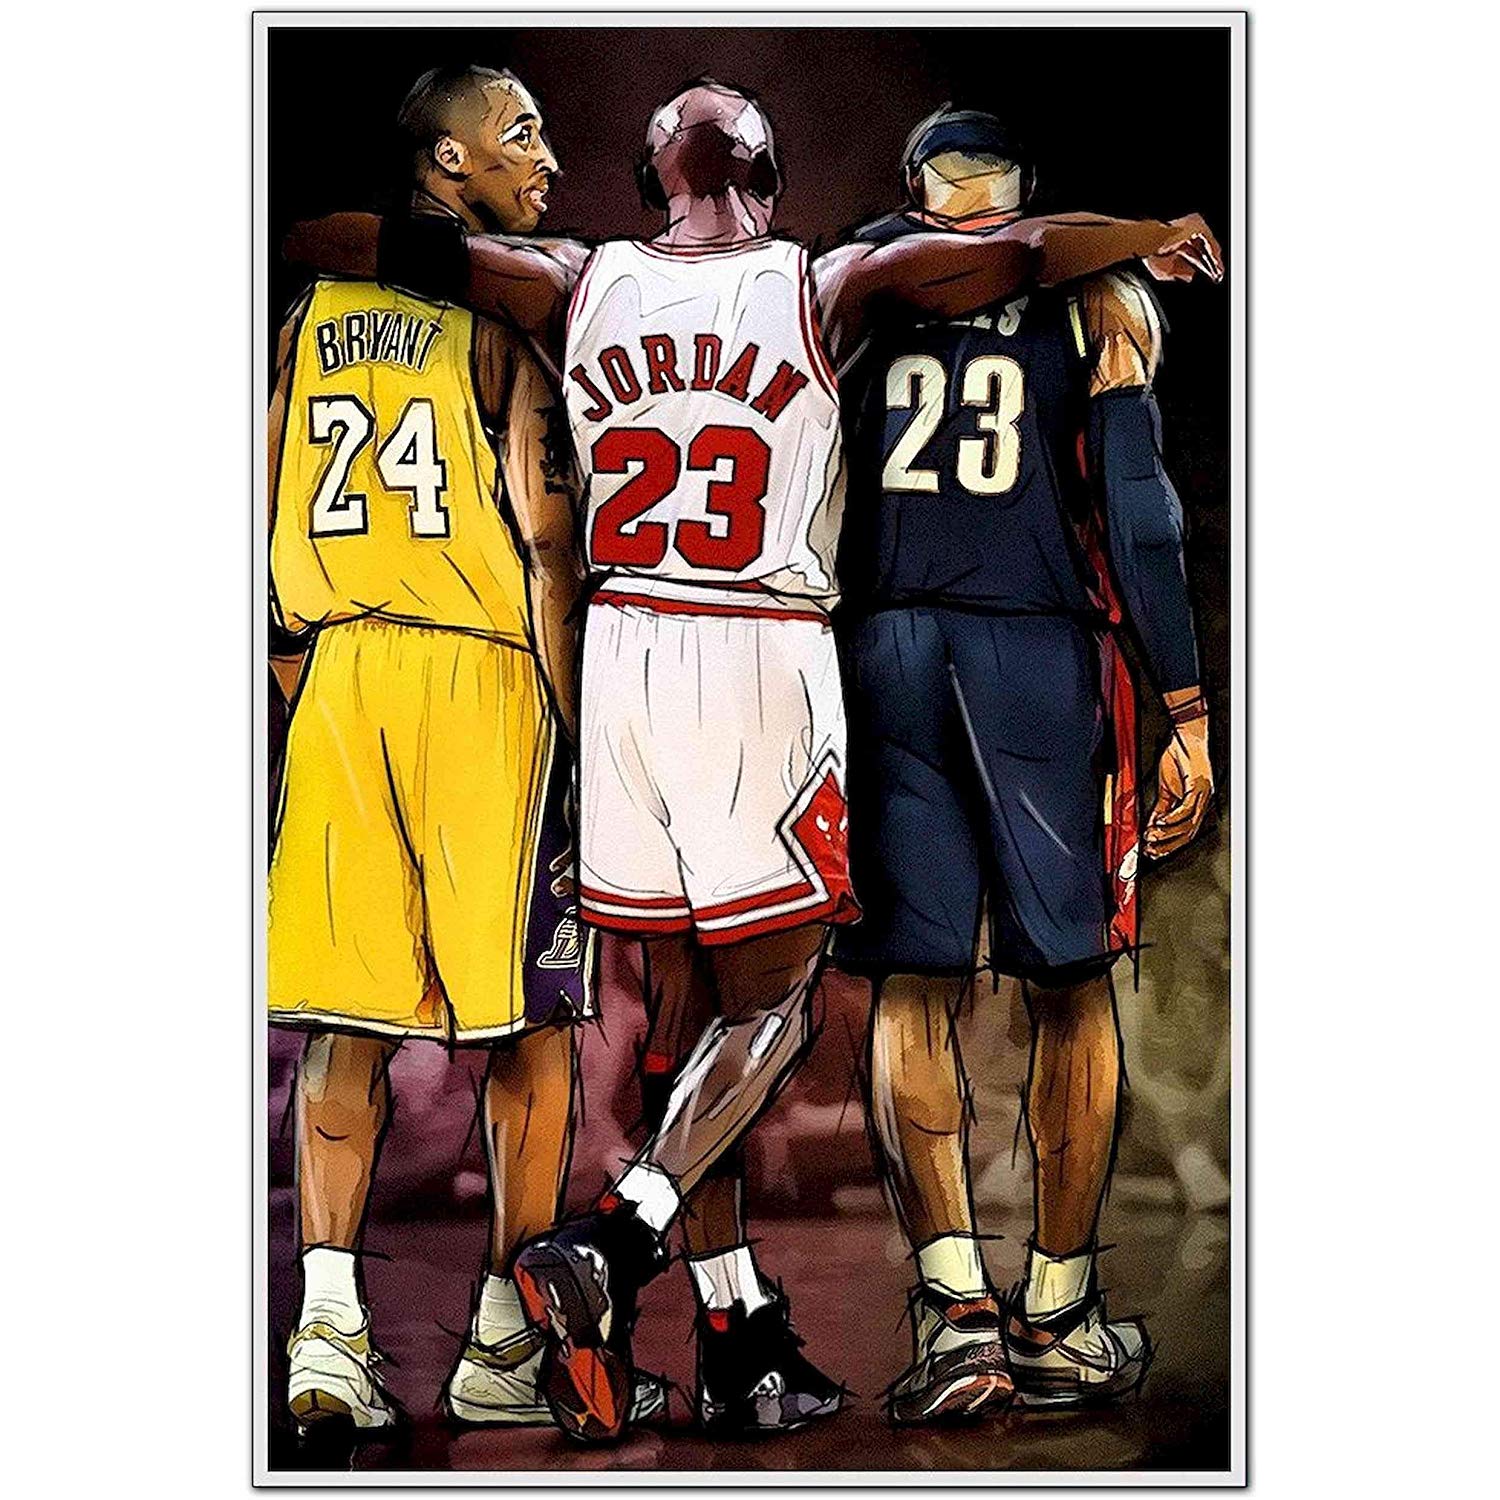 Michael Jordan And Lebron James Wallpapers